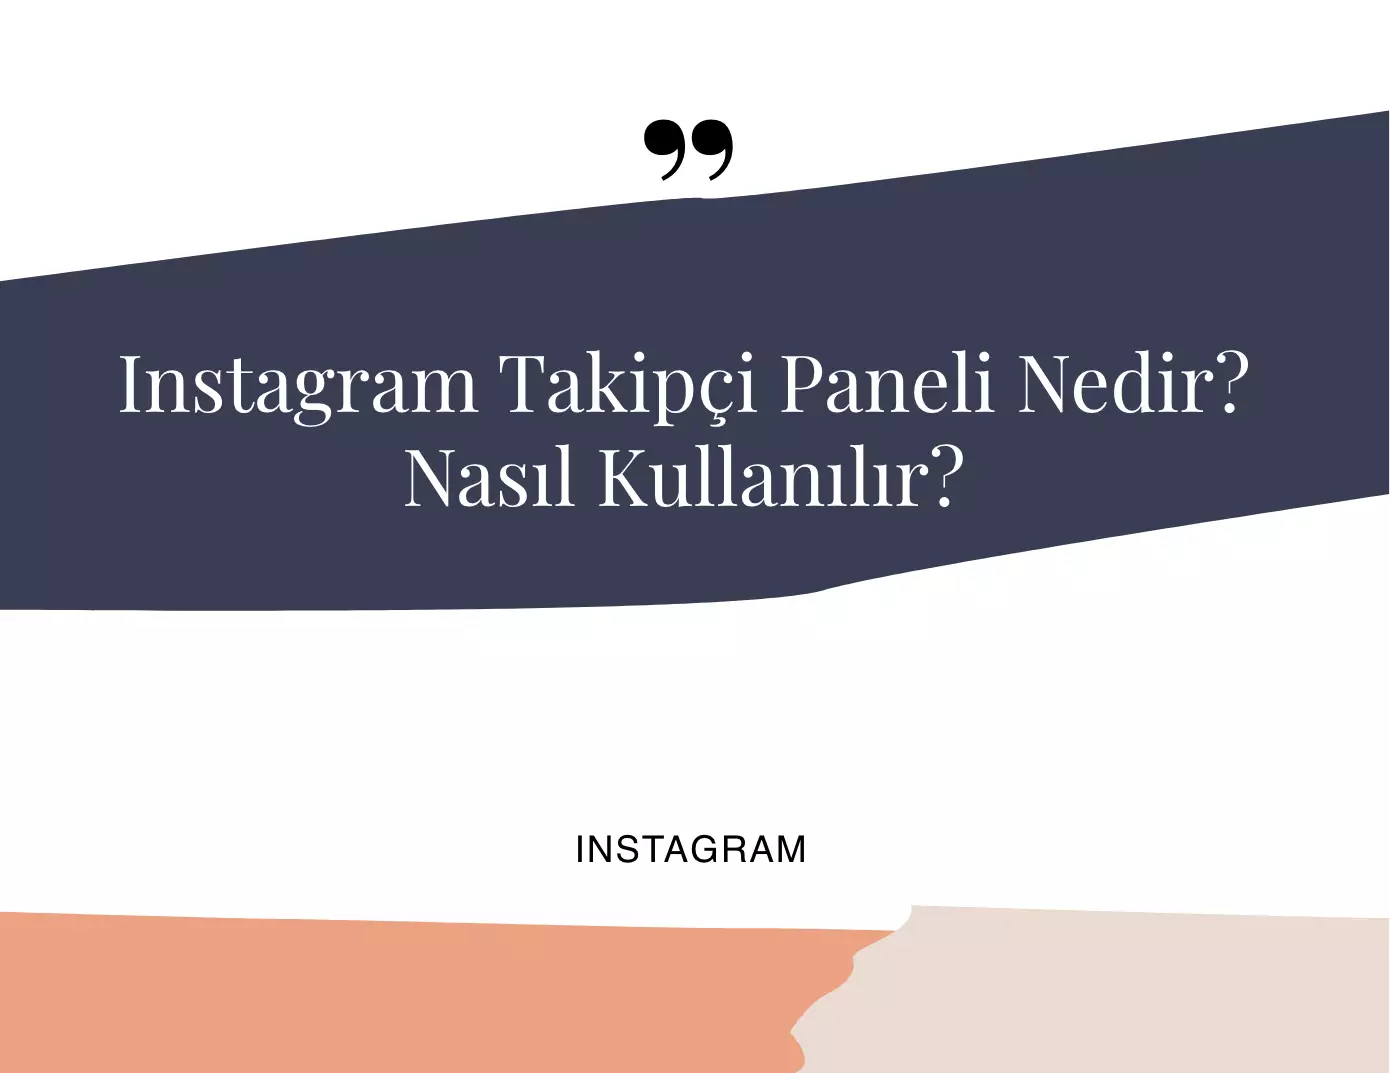 Instagram Takipçi Paneli Nedir Nasıl Kullanılır?